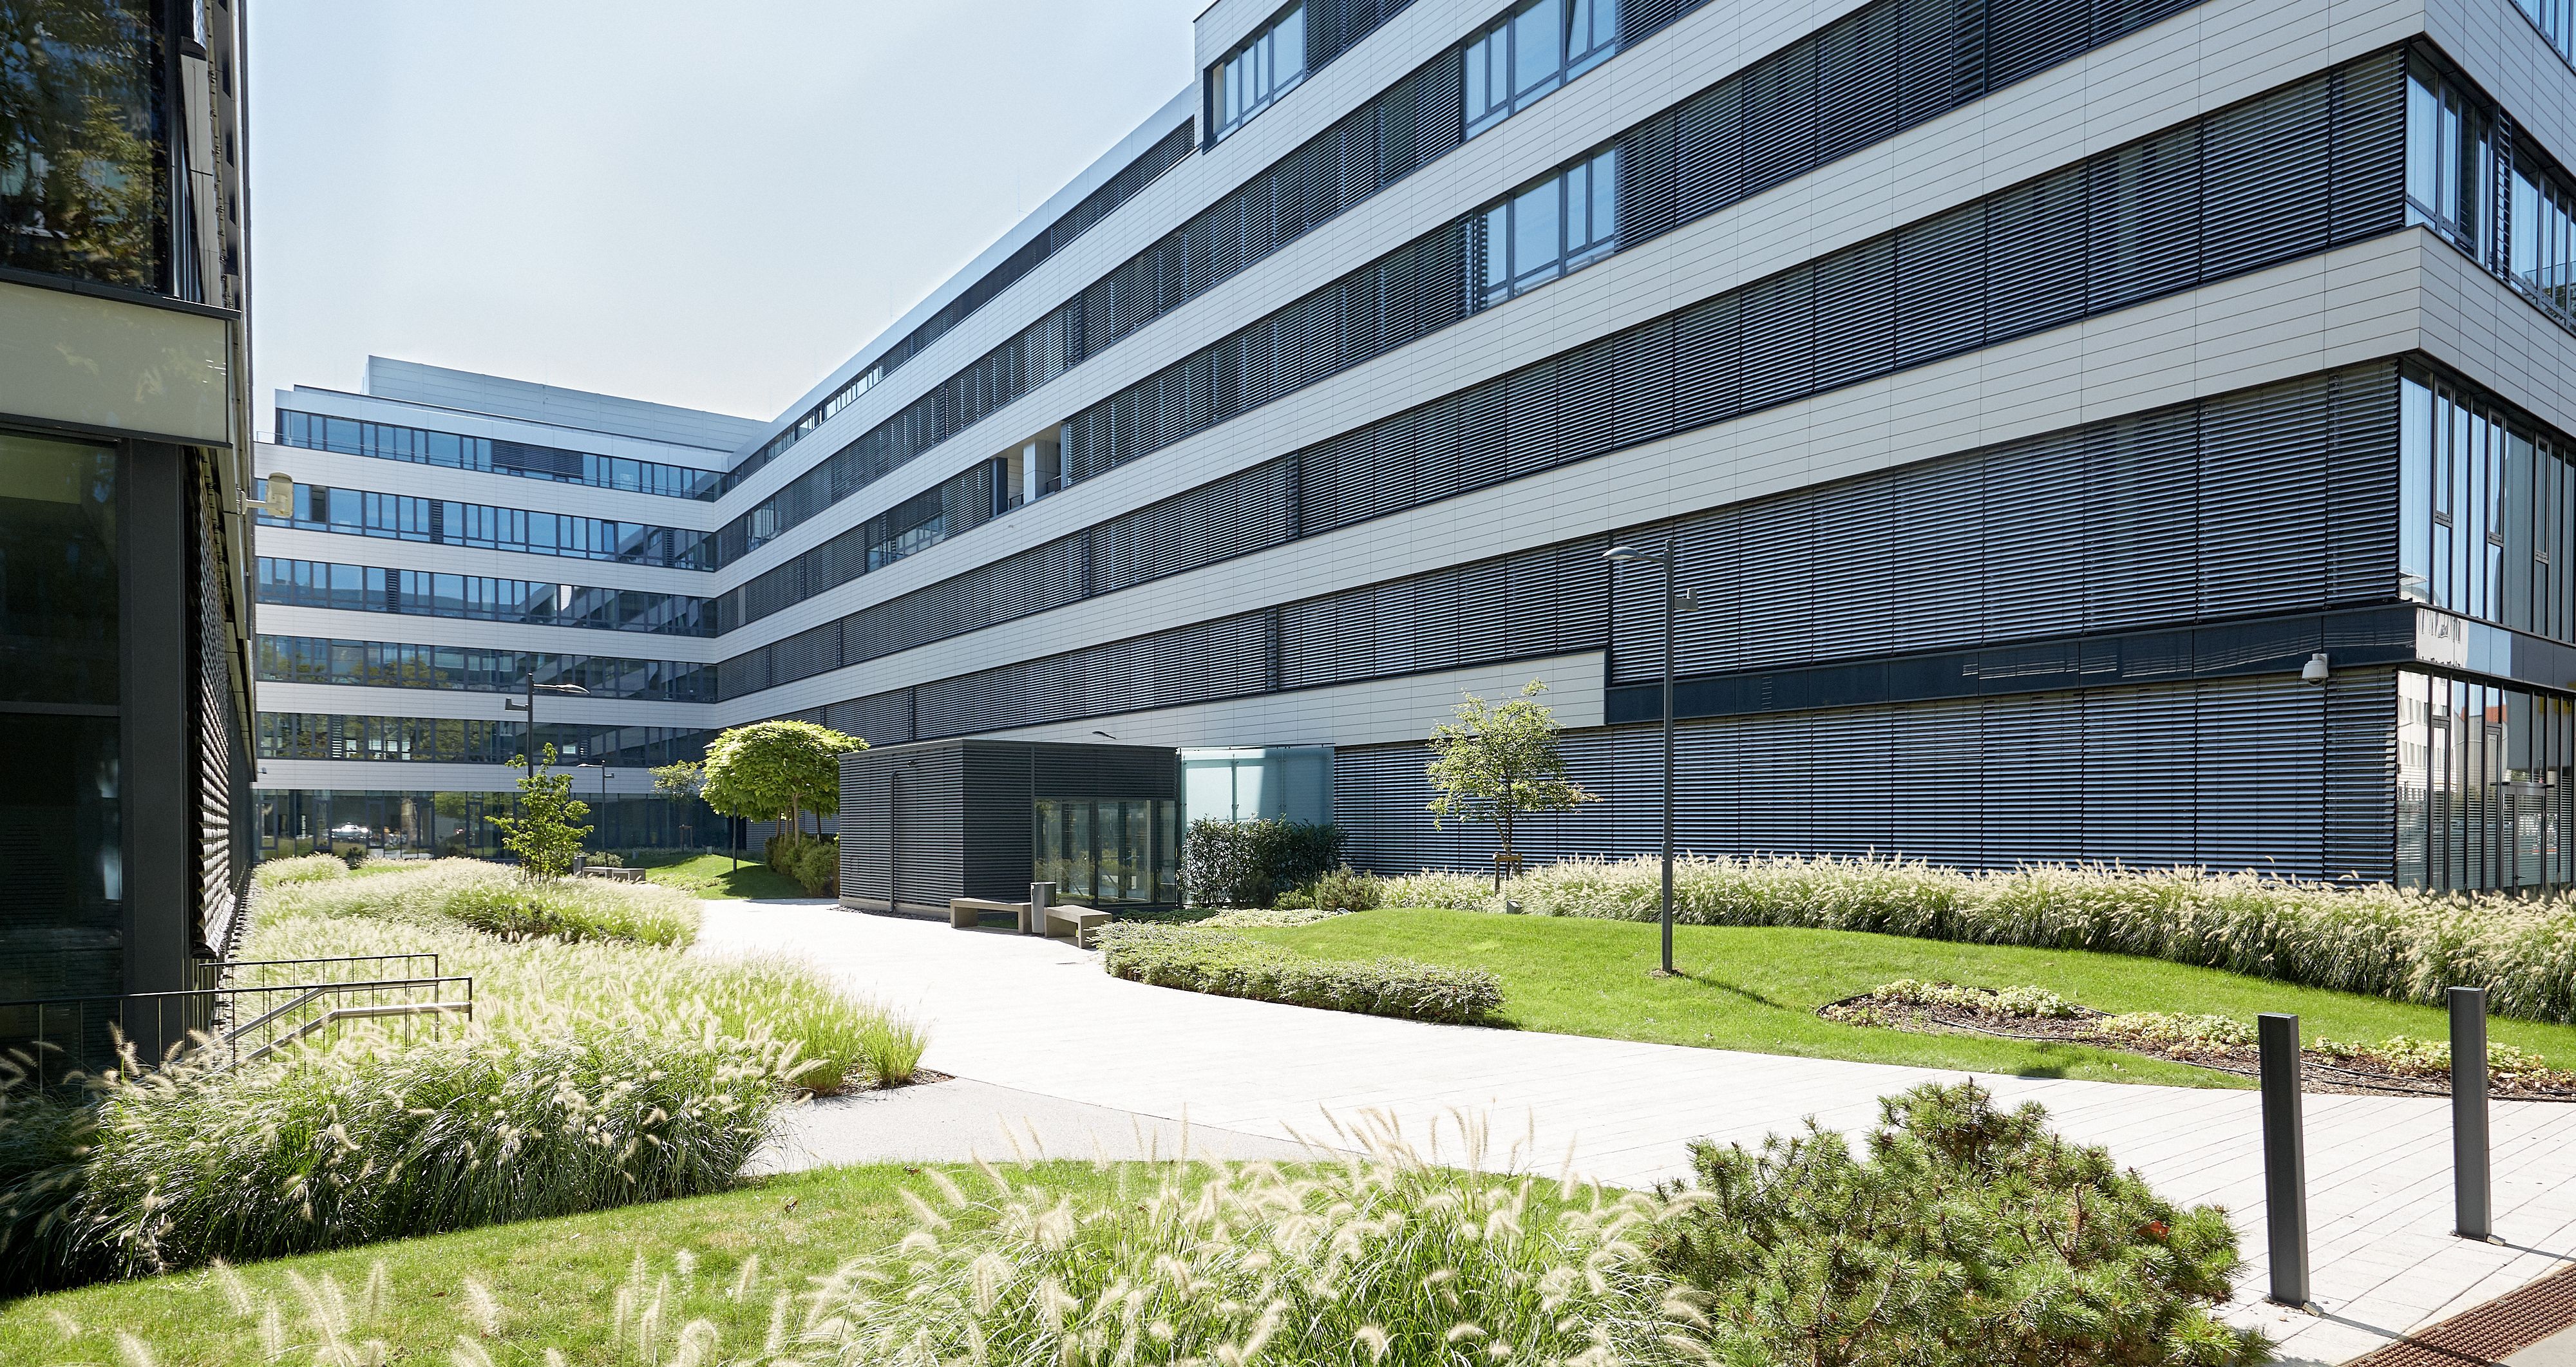 Foto: Innenhof zwischen hochmodernen Bürogebäuden mit Alu-Glas-Fassaden und modern gestalteten Grünflächen